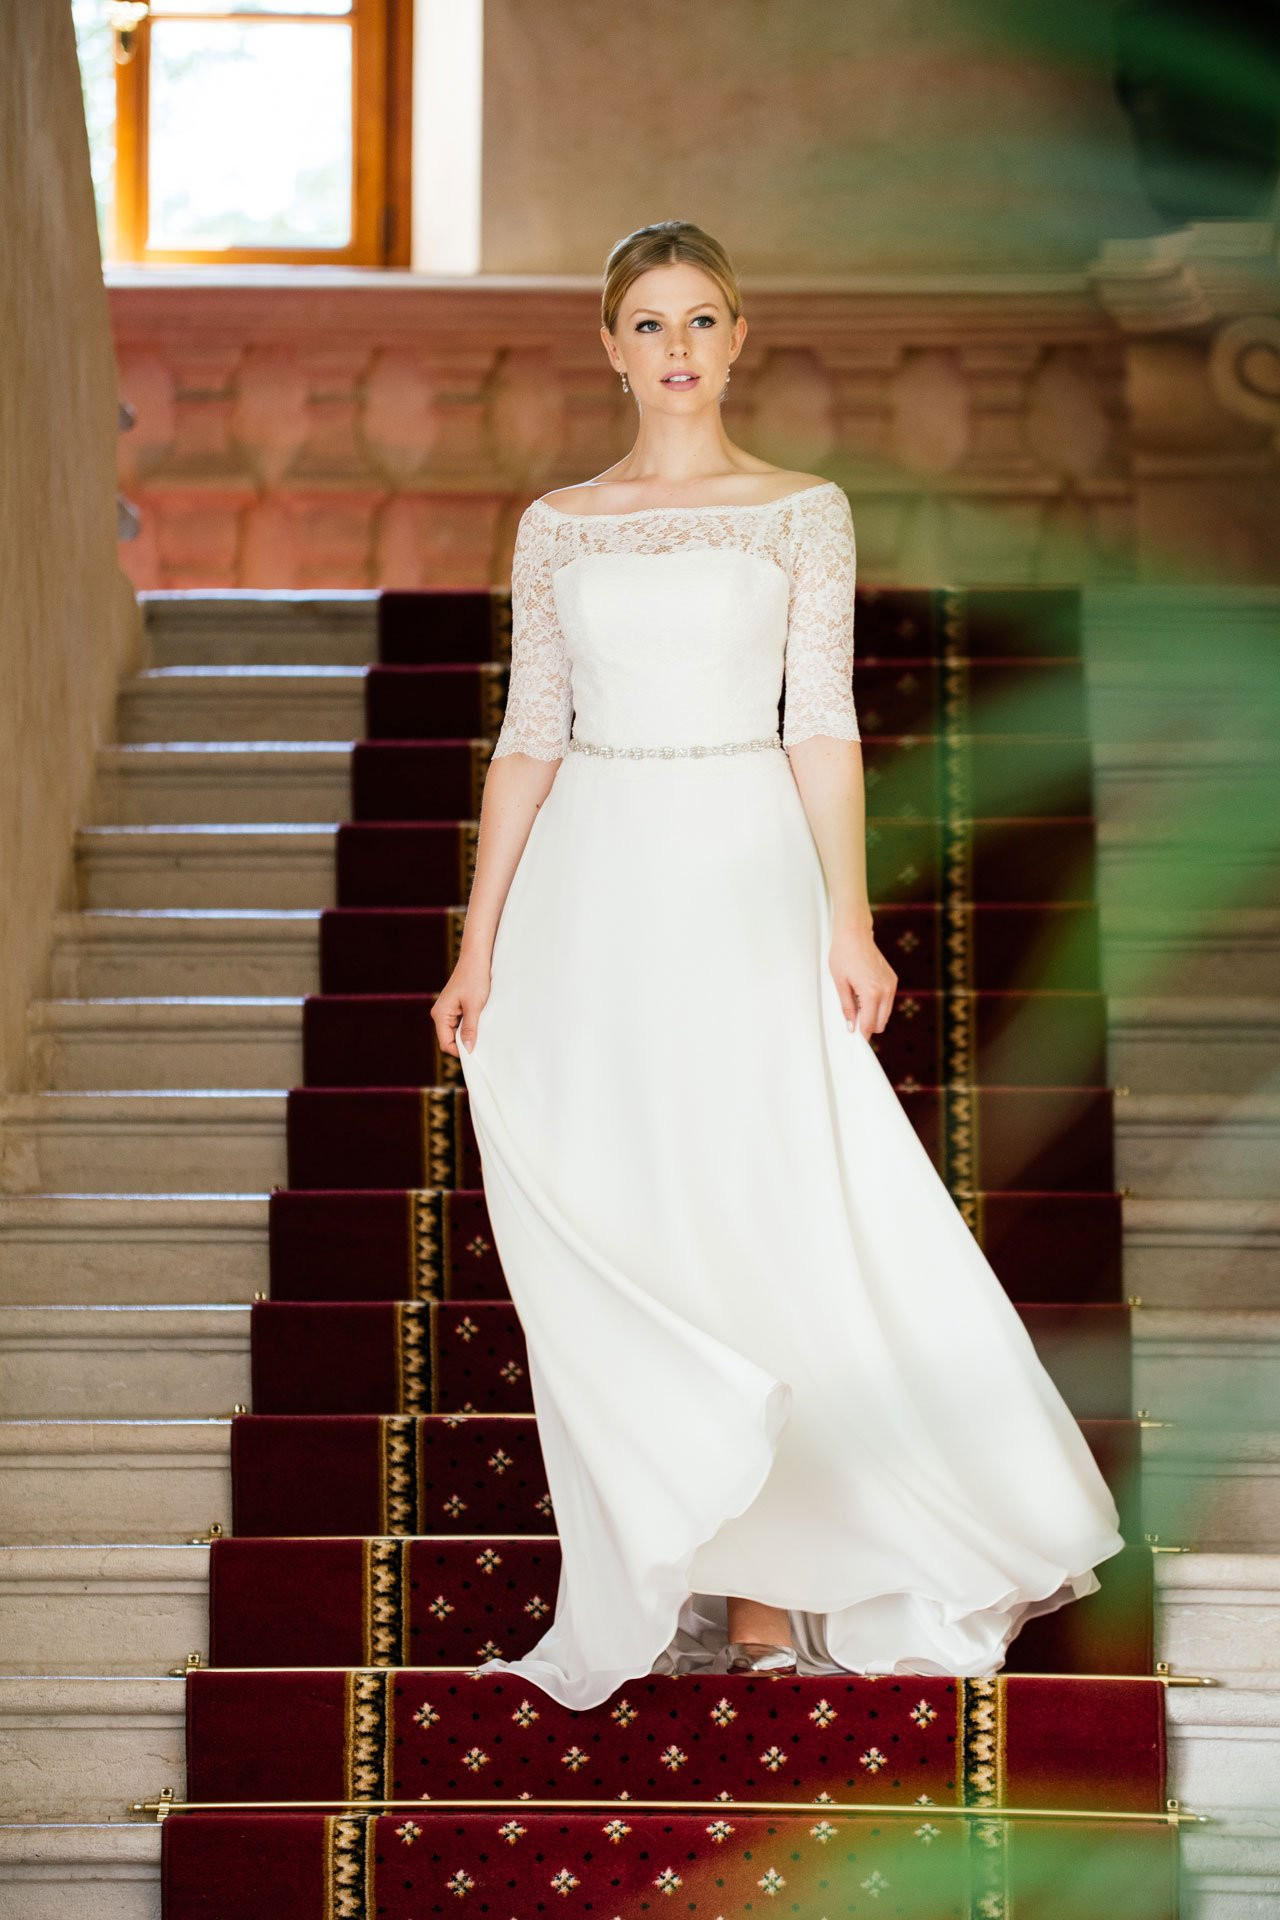 Vintage Hochzeitskleid Spitze
 Brautkleid Spitze Ärmel – Vintage Bolero Look mit